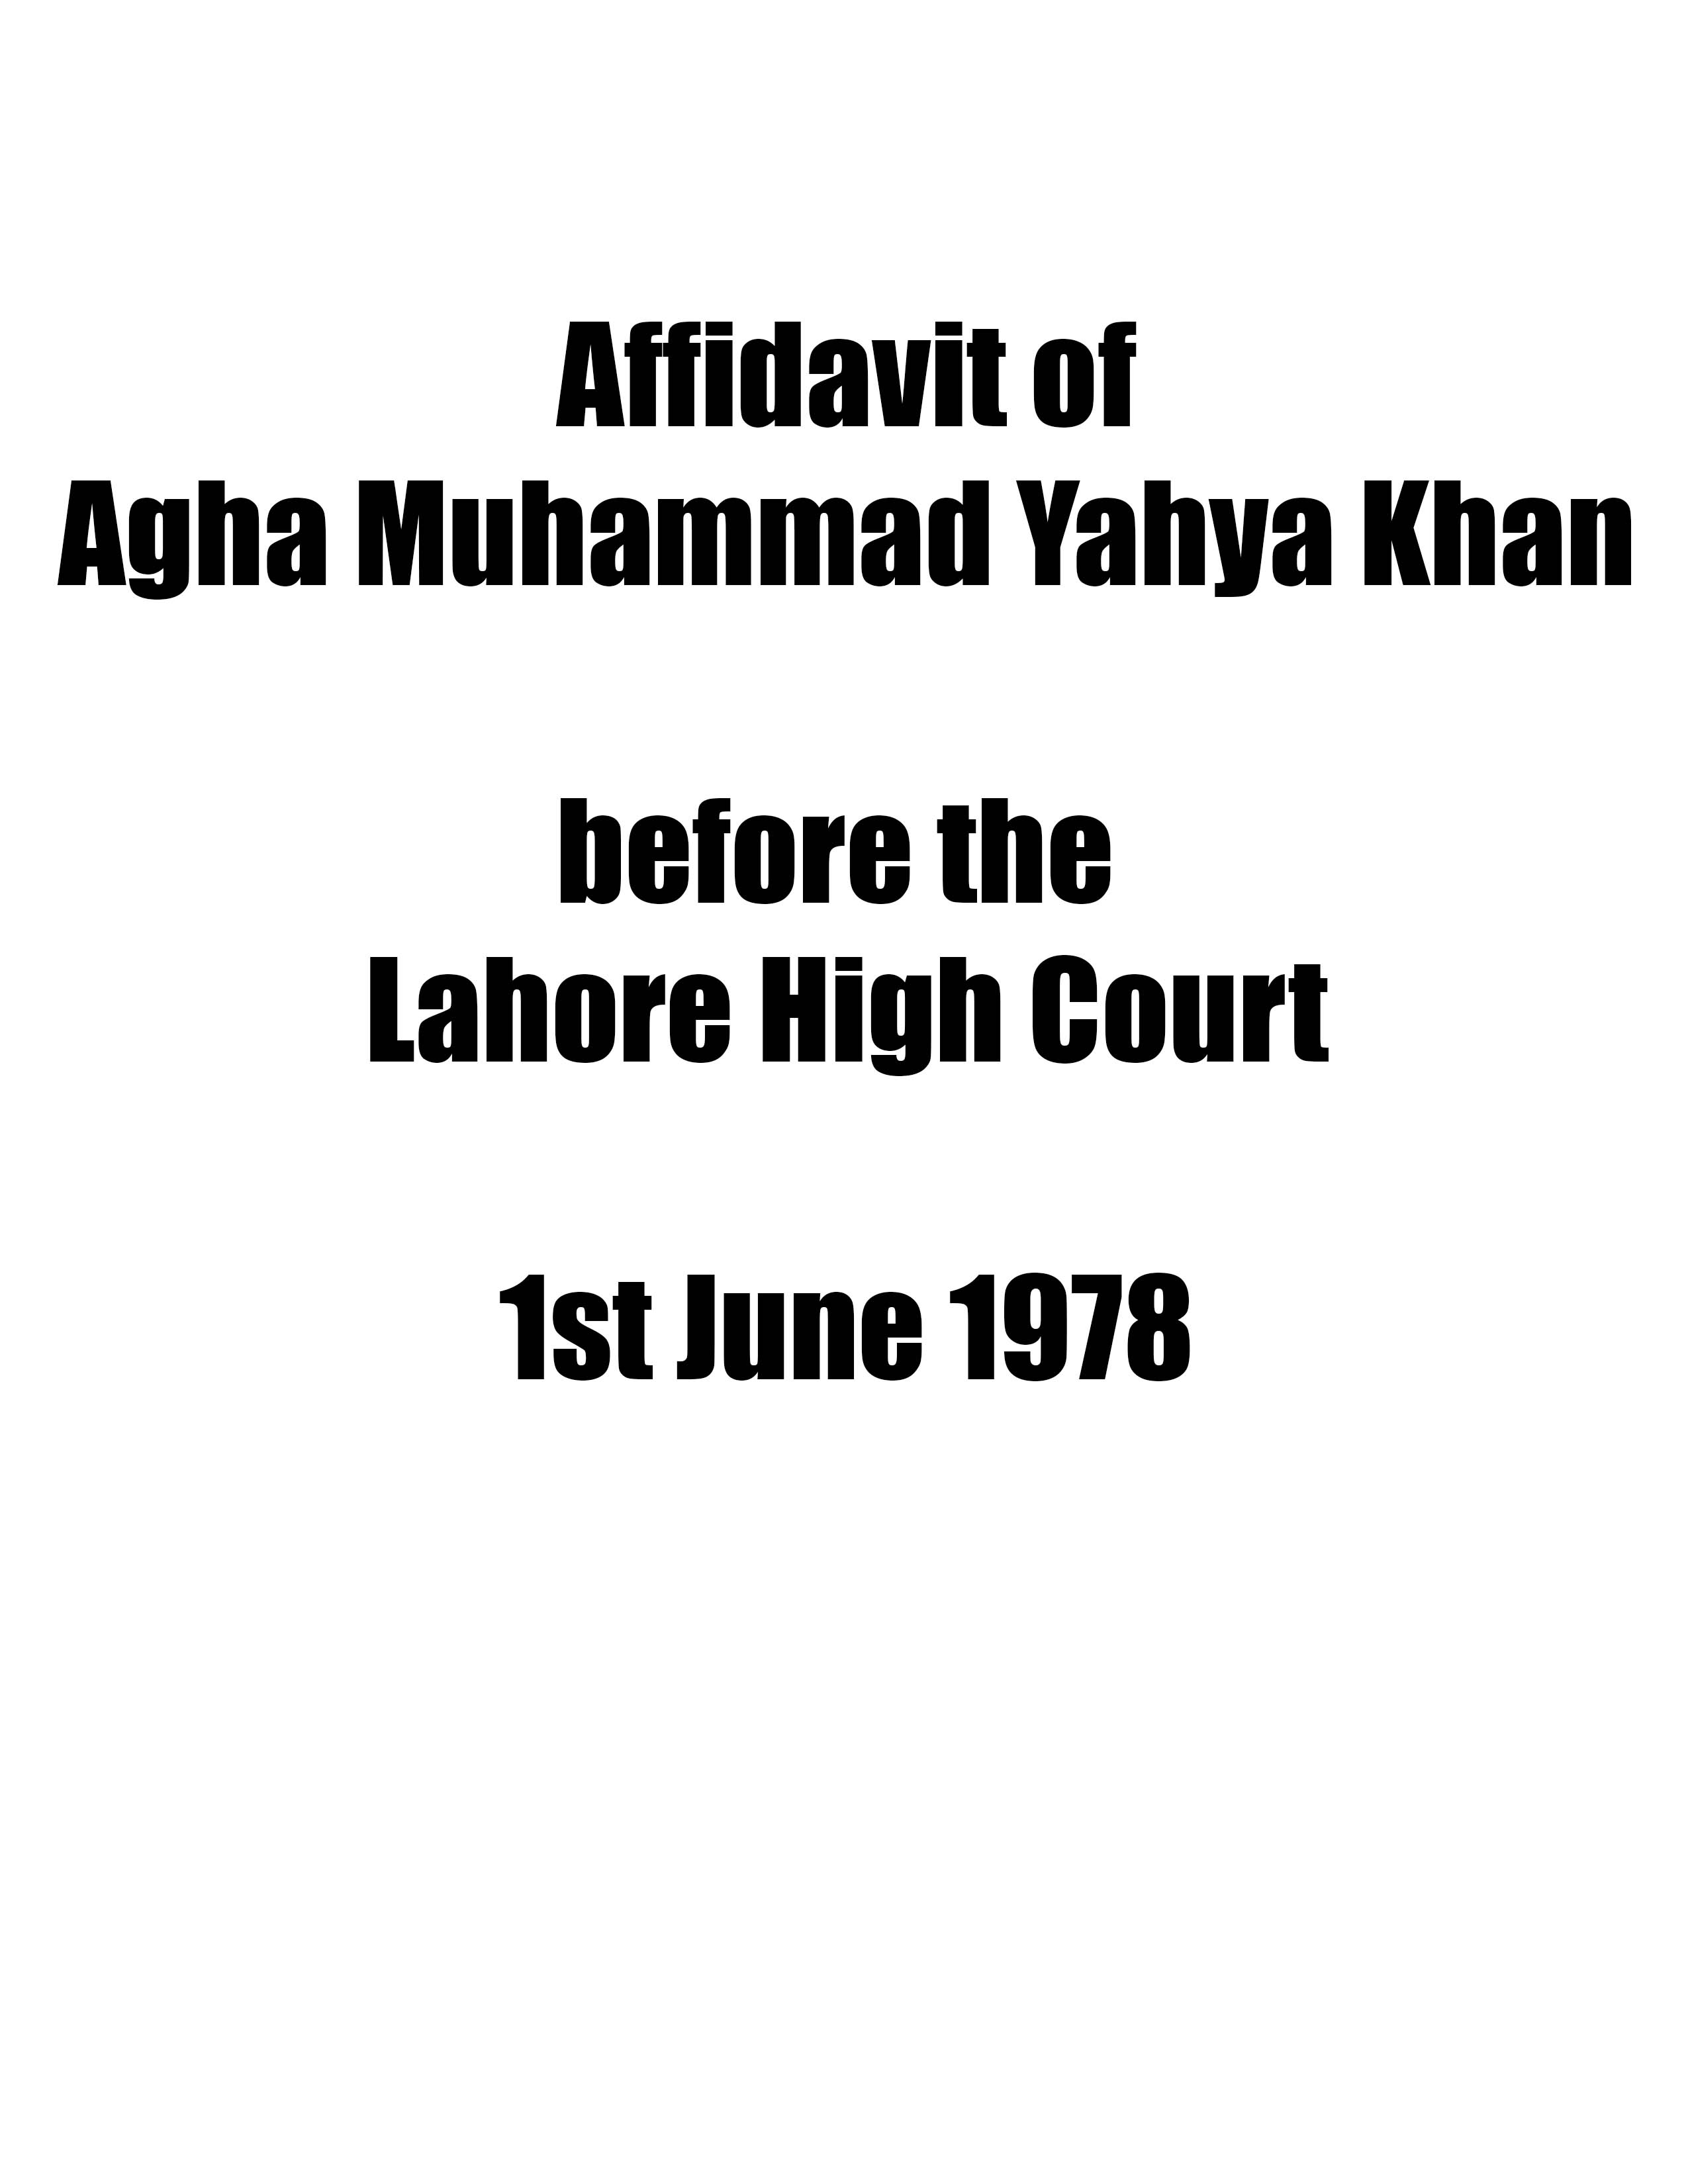 Affidavit of Yahya Khan